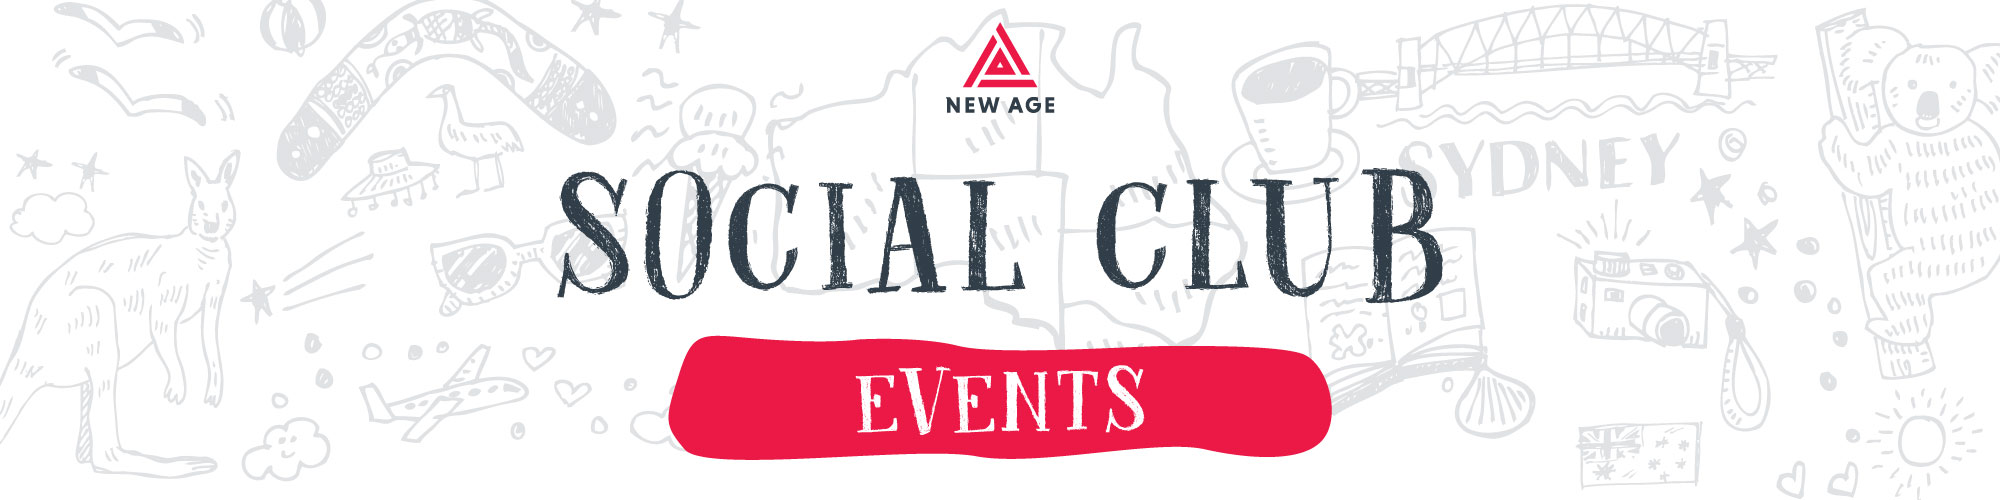 New Age Caravans Social Club Events